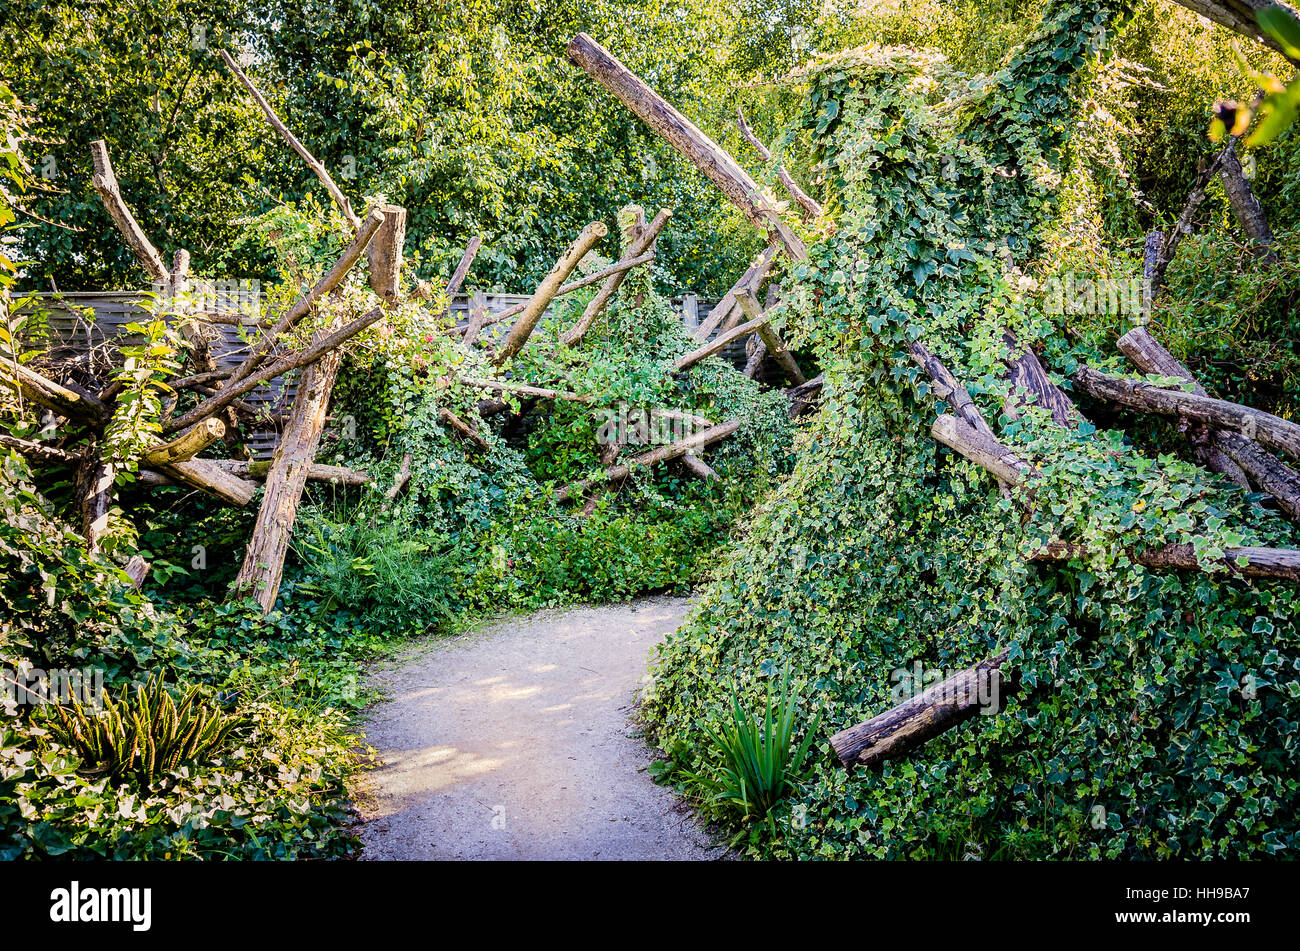 Un giardino di ricoperta di pezzi di woody si presta un'aria di mistero come il percorso conduce fuori della vista Foto Stock